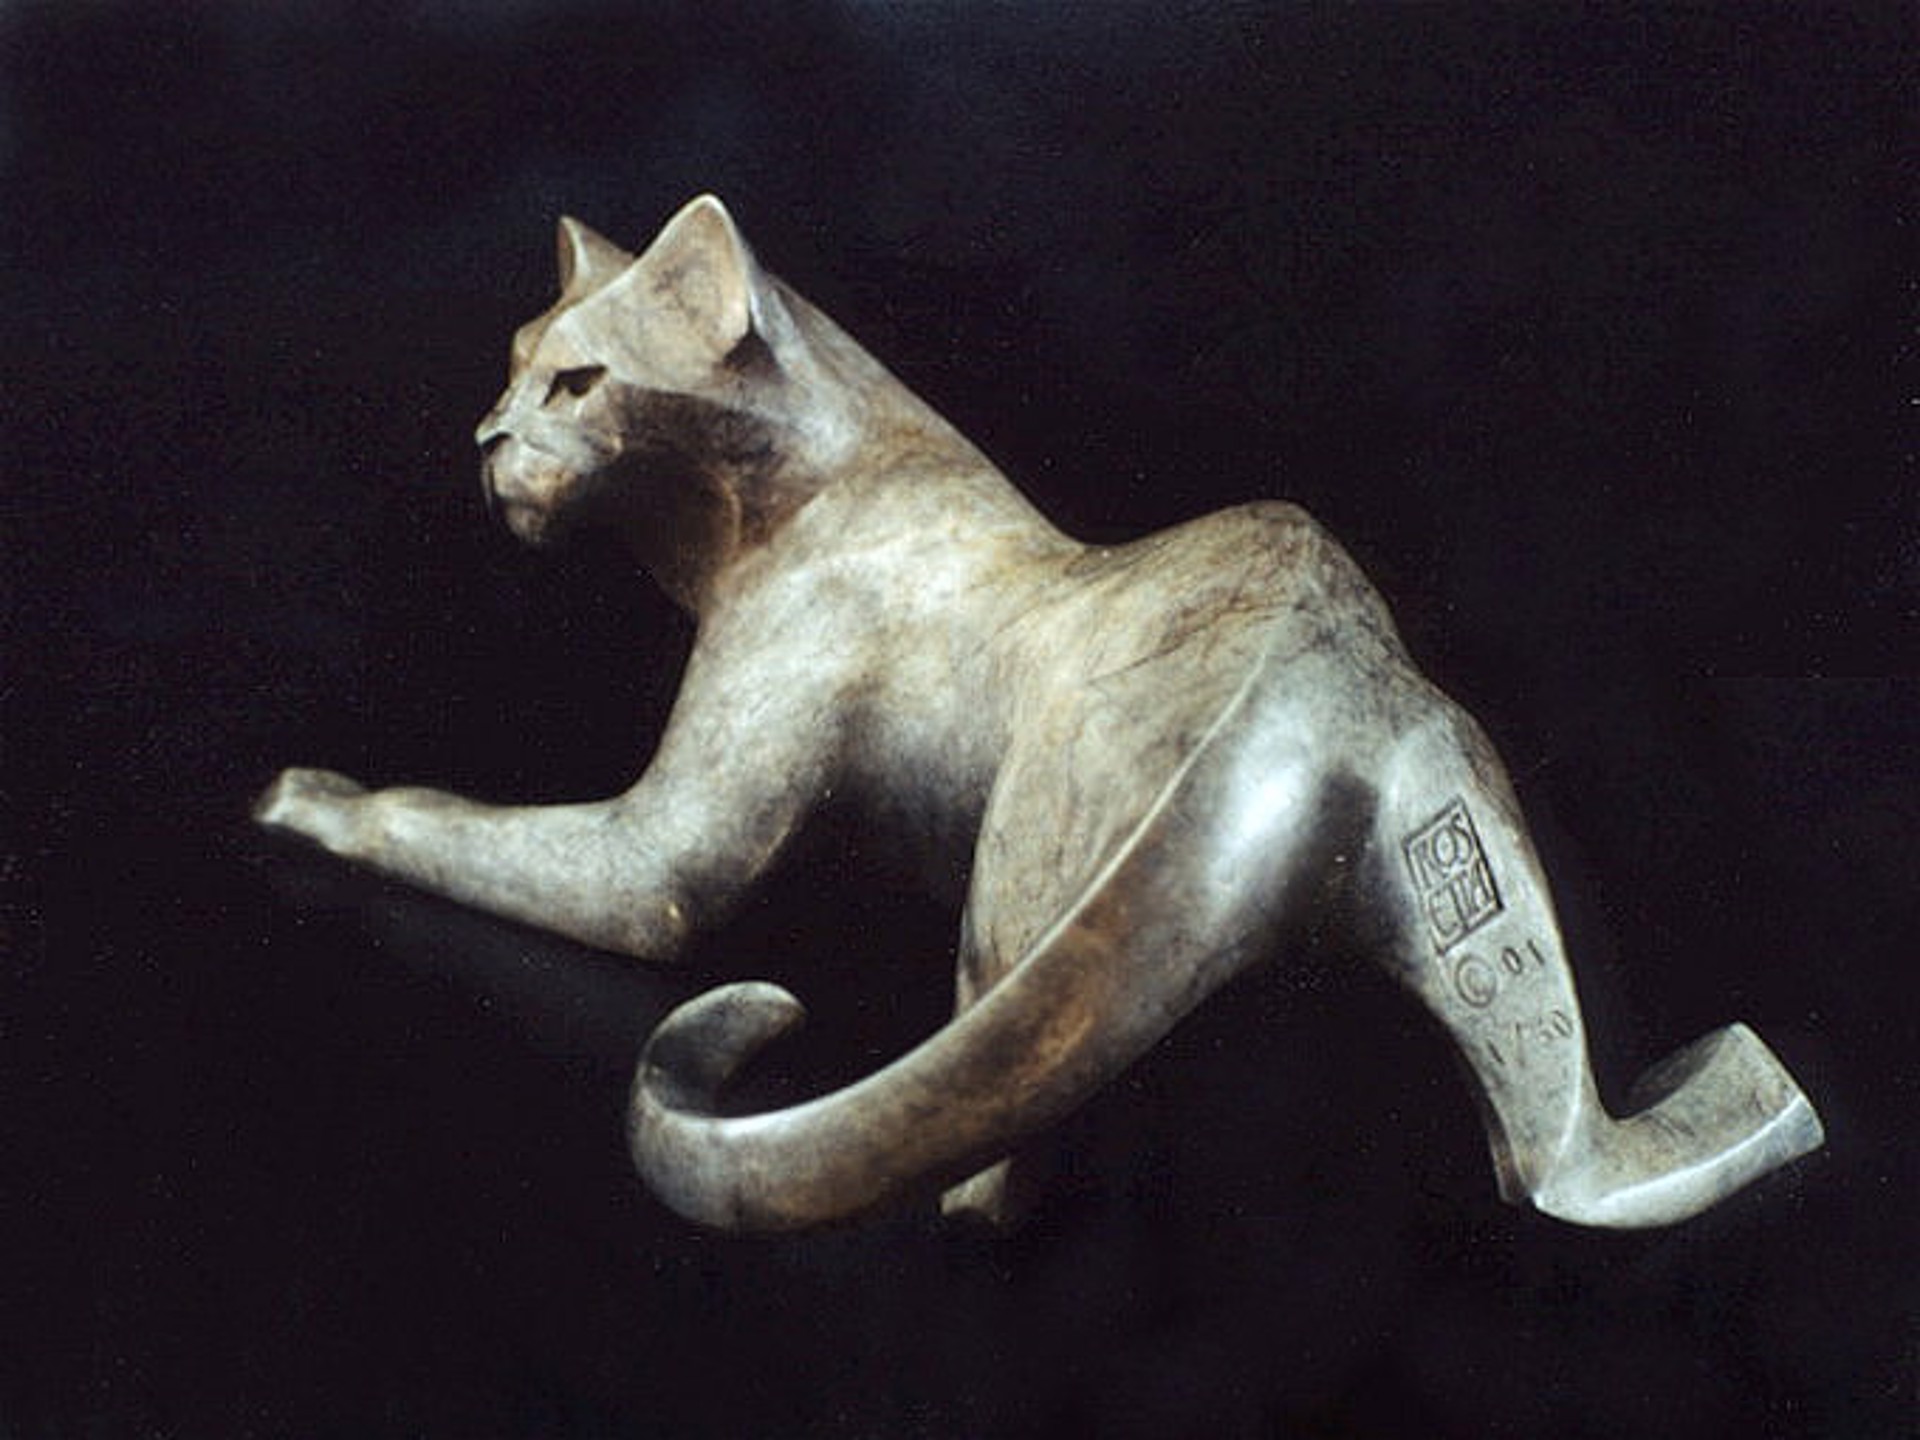 Miniature Cat - Kuvo by Rosetta